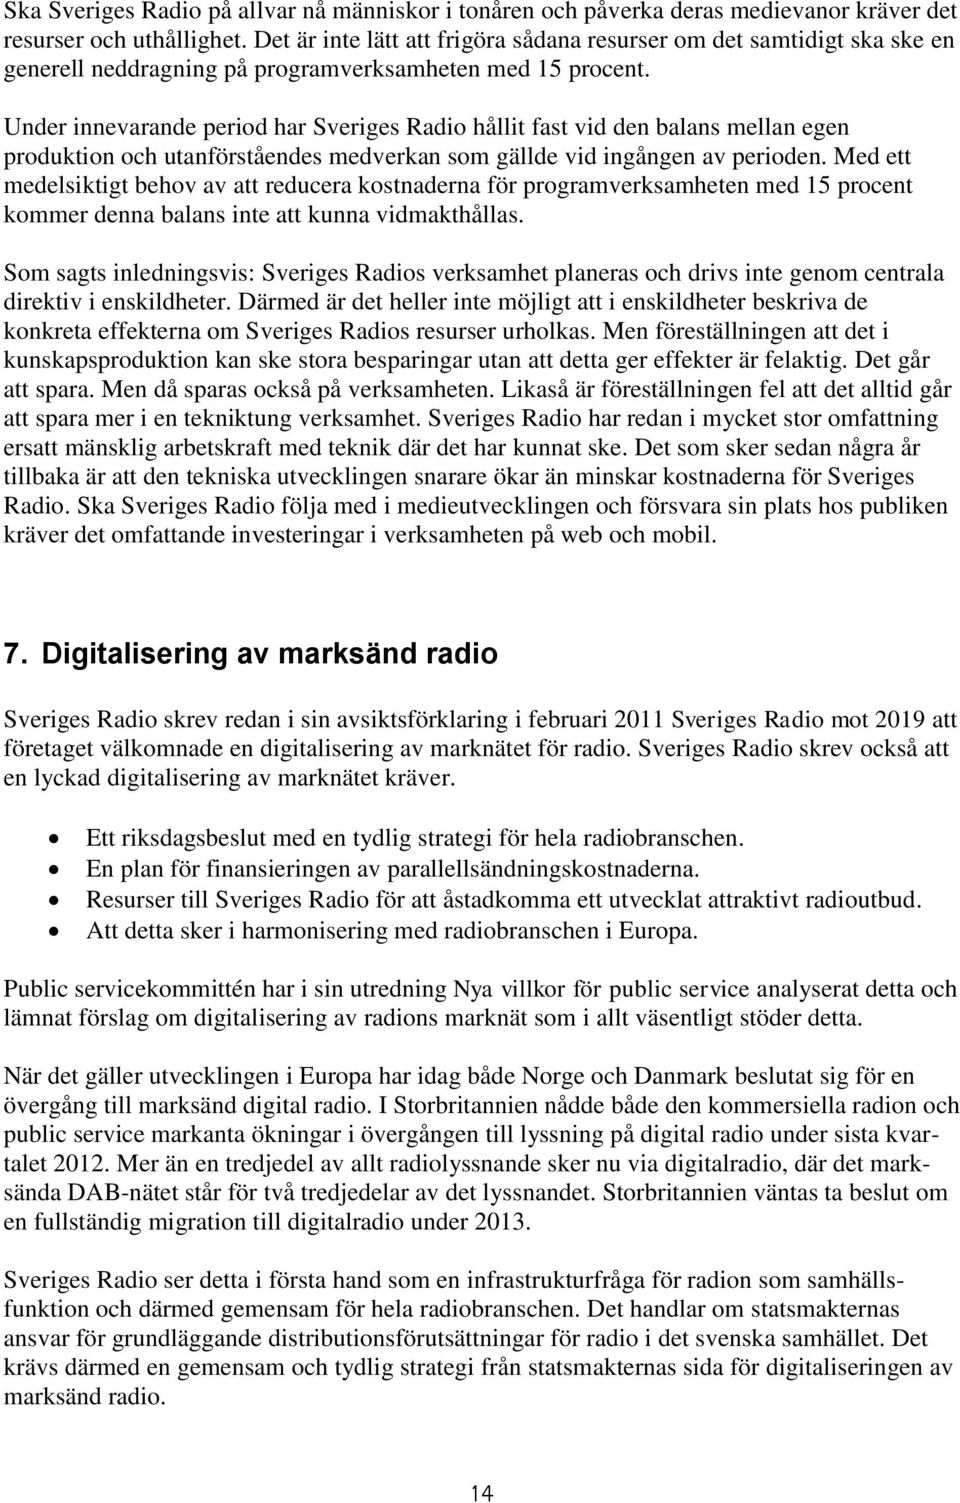 Under innevarande period har Sveriges Radio hållit fast vid den balans mellan egen produktion och utanförståendes medverkan som gällde vid ingången av perioden.